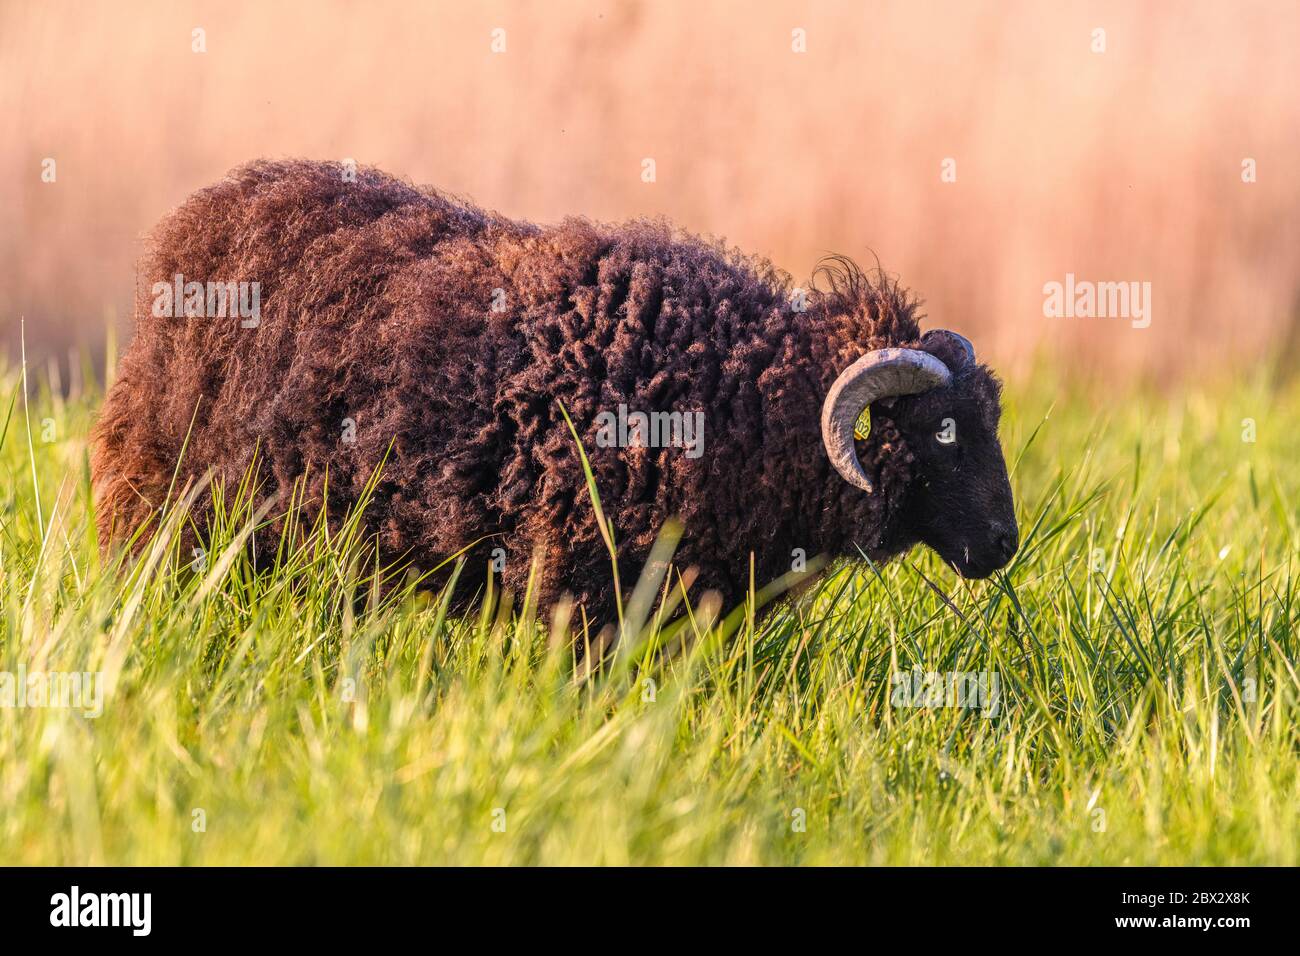 France, somme (80), Baie de somme, le Hourdel, Maison de la Baie de somme, moutons Ouessant (breton) avec jeunes agneaux qui broutage dans le marais Banque D'Images